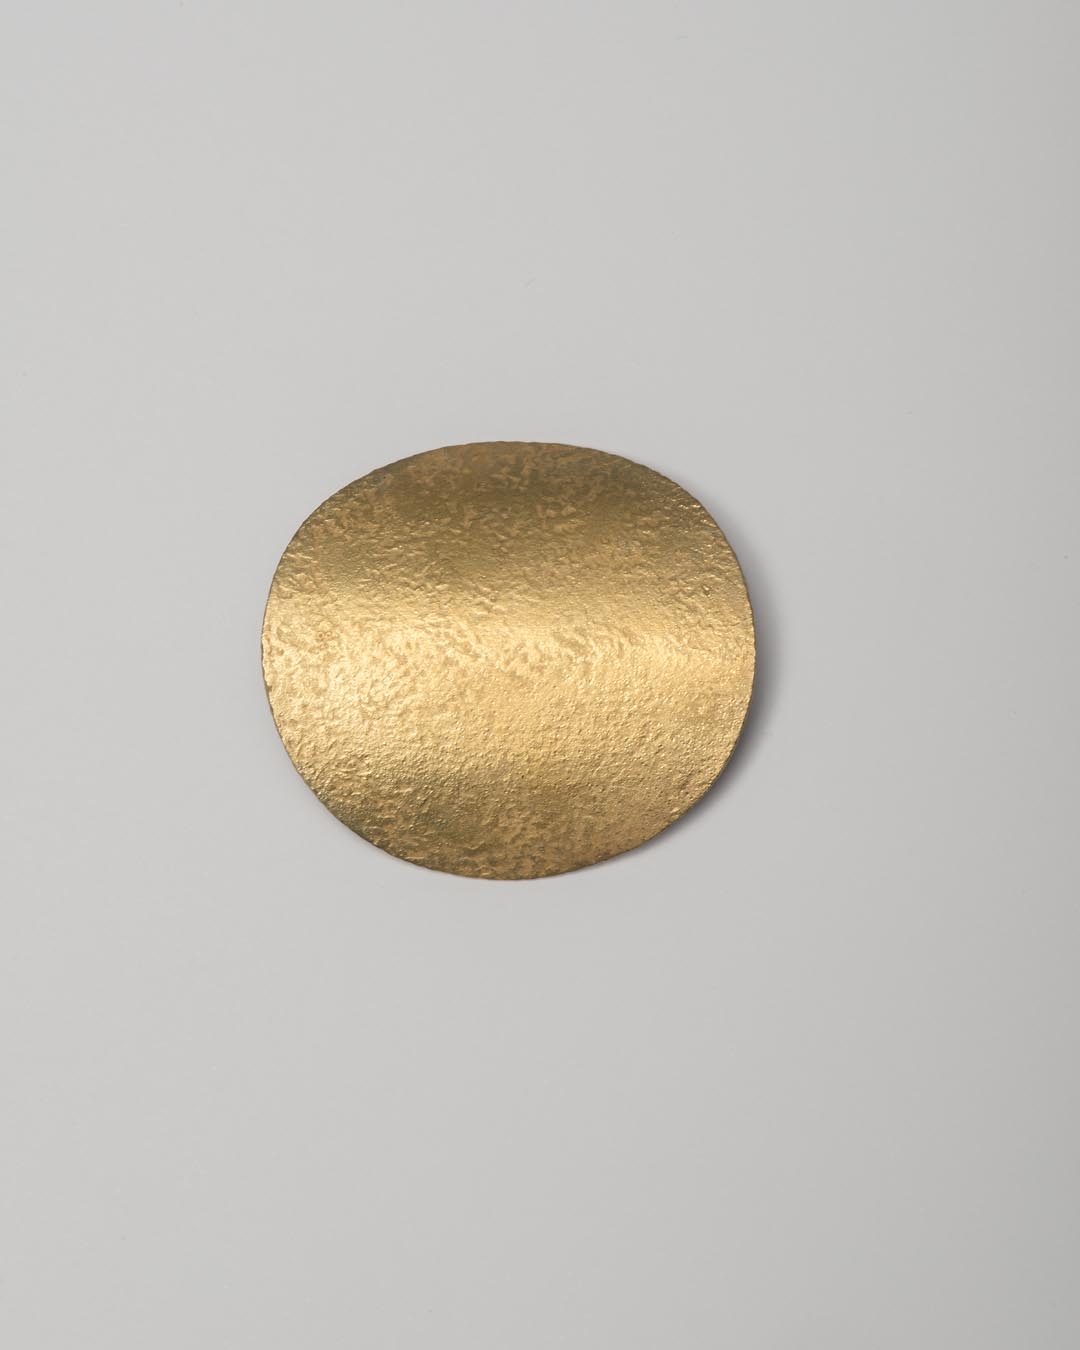 Yasuki Hiramatsu, untitled, brooch/pendant; gold-plated silver, 52 x 51 x 9 mm